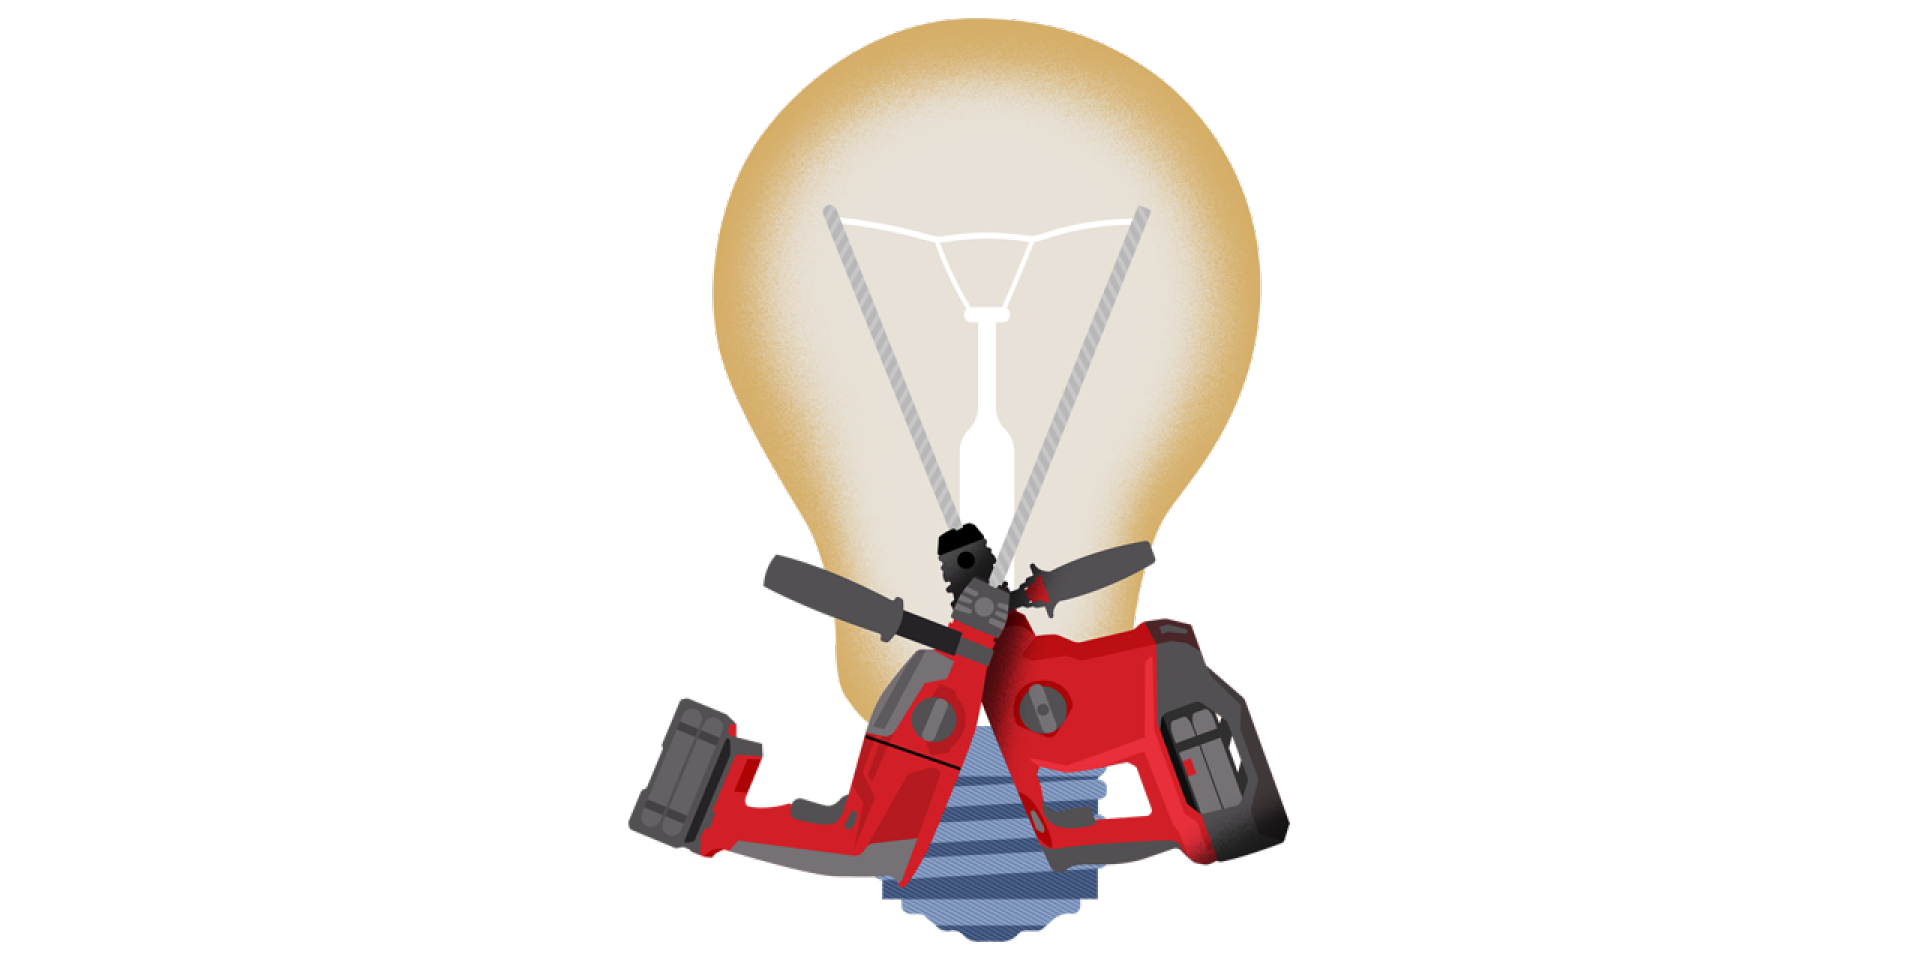 Illustration de 2 perforateurs croisés devant une ampoule